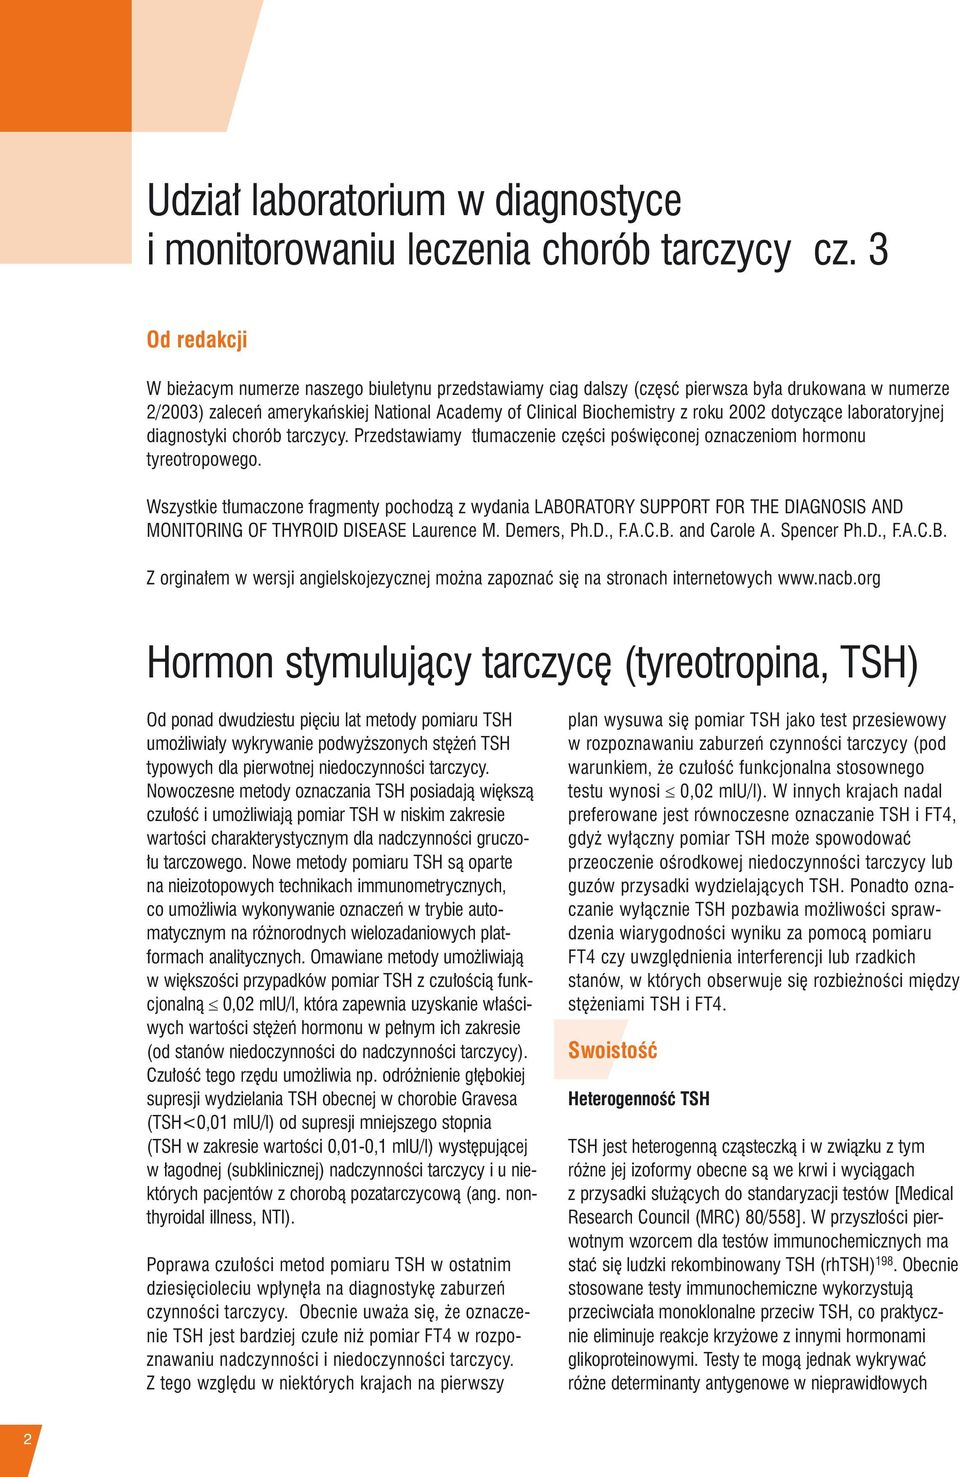 2002 dotyczące laboratoryjnej diagnostyki chorób tarczycy. Przedstawiamy tłumaczenie części poświęconej oznaczeniom hormonu tyreotropowego.